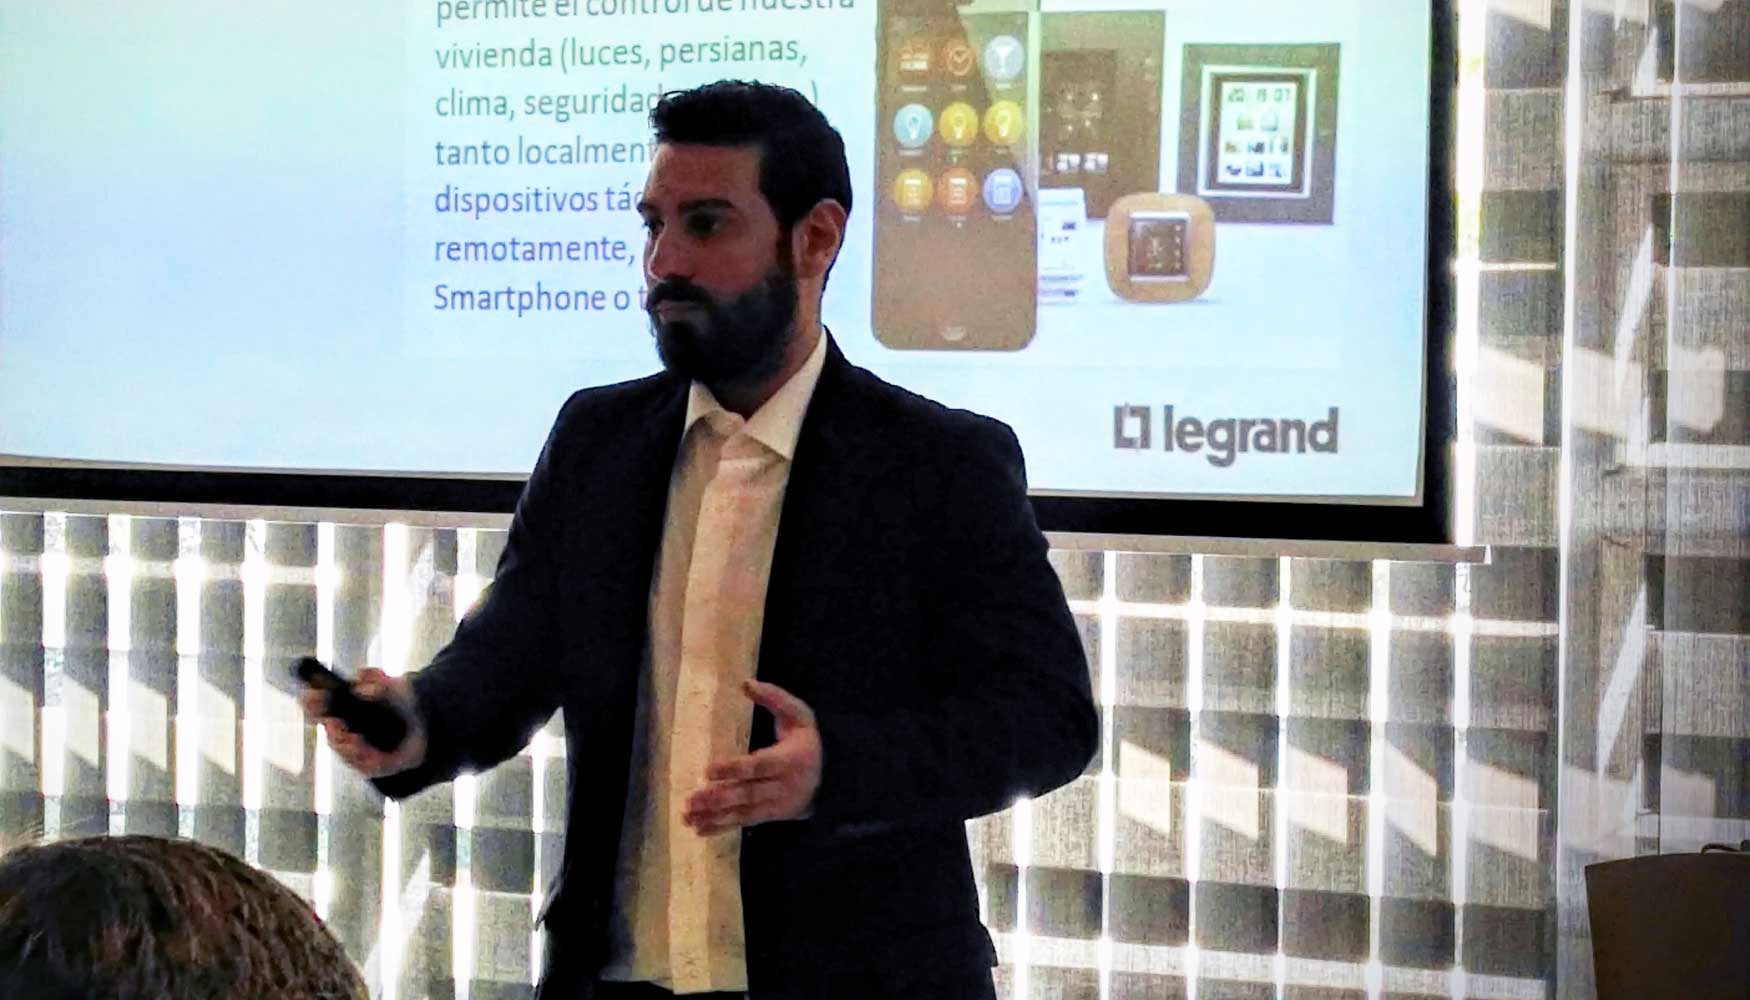 Jordi Contreras, product manager de Legrand, exponiendo algunos de los productos Legrand integrados en el programa Eliot...